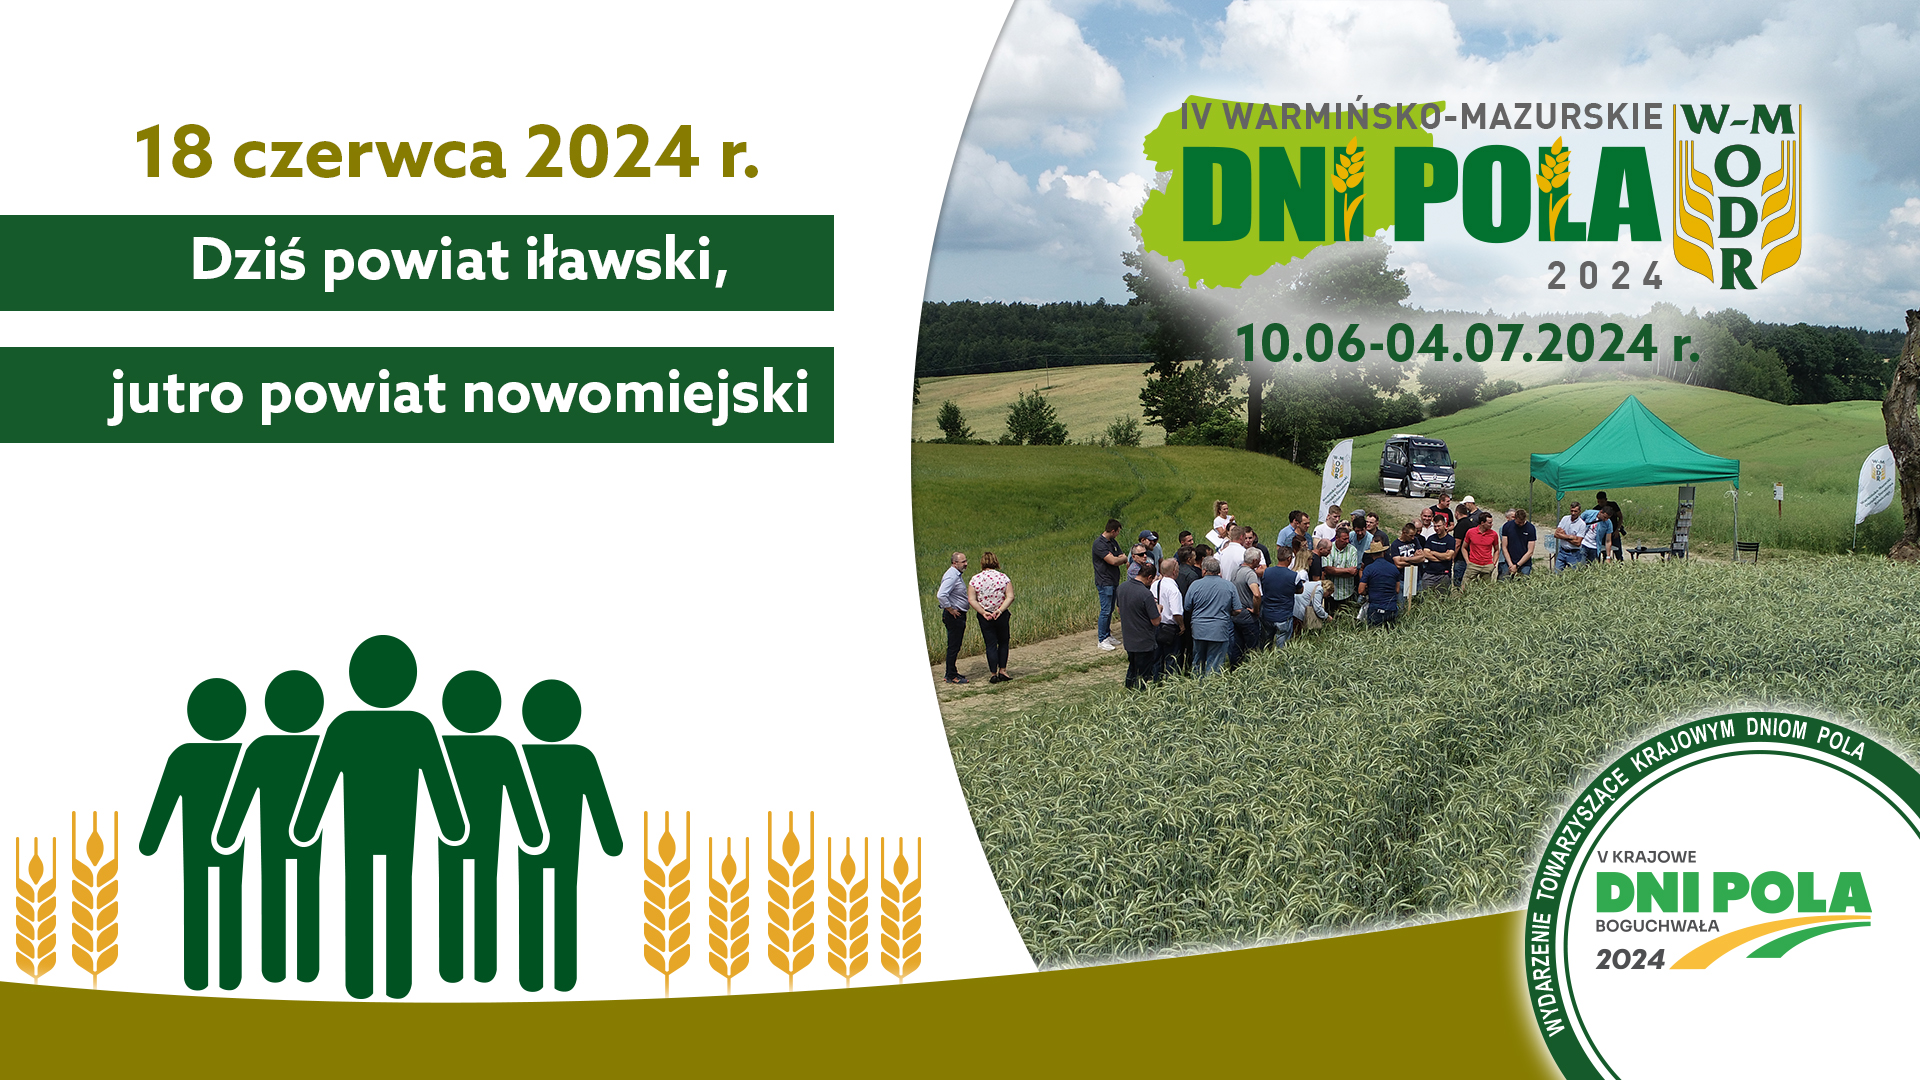 IV Warmińsko-Mazurskie Dni Pola 2024 – 18.06.2024 odwiedzamy powiat iławski